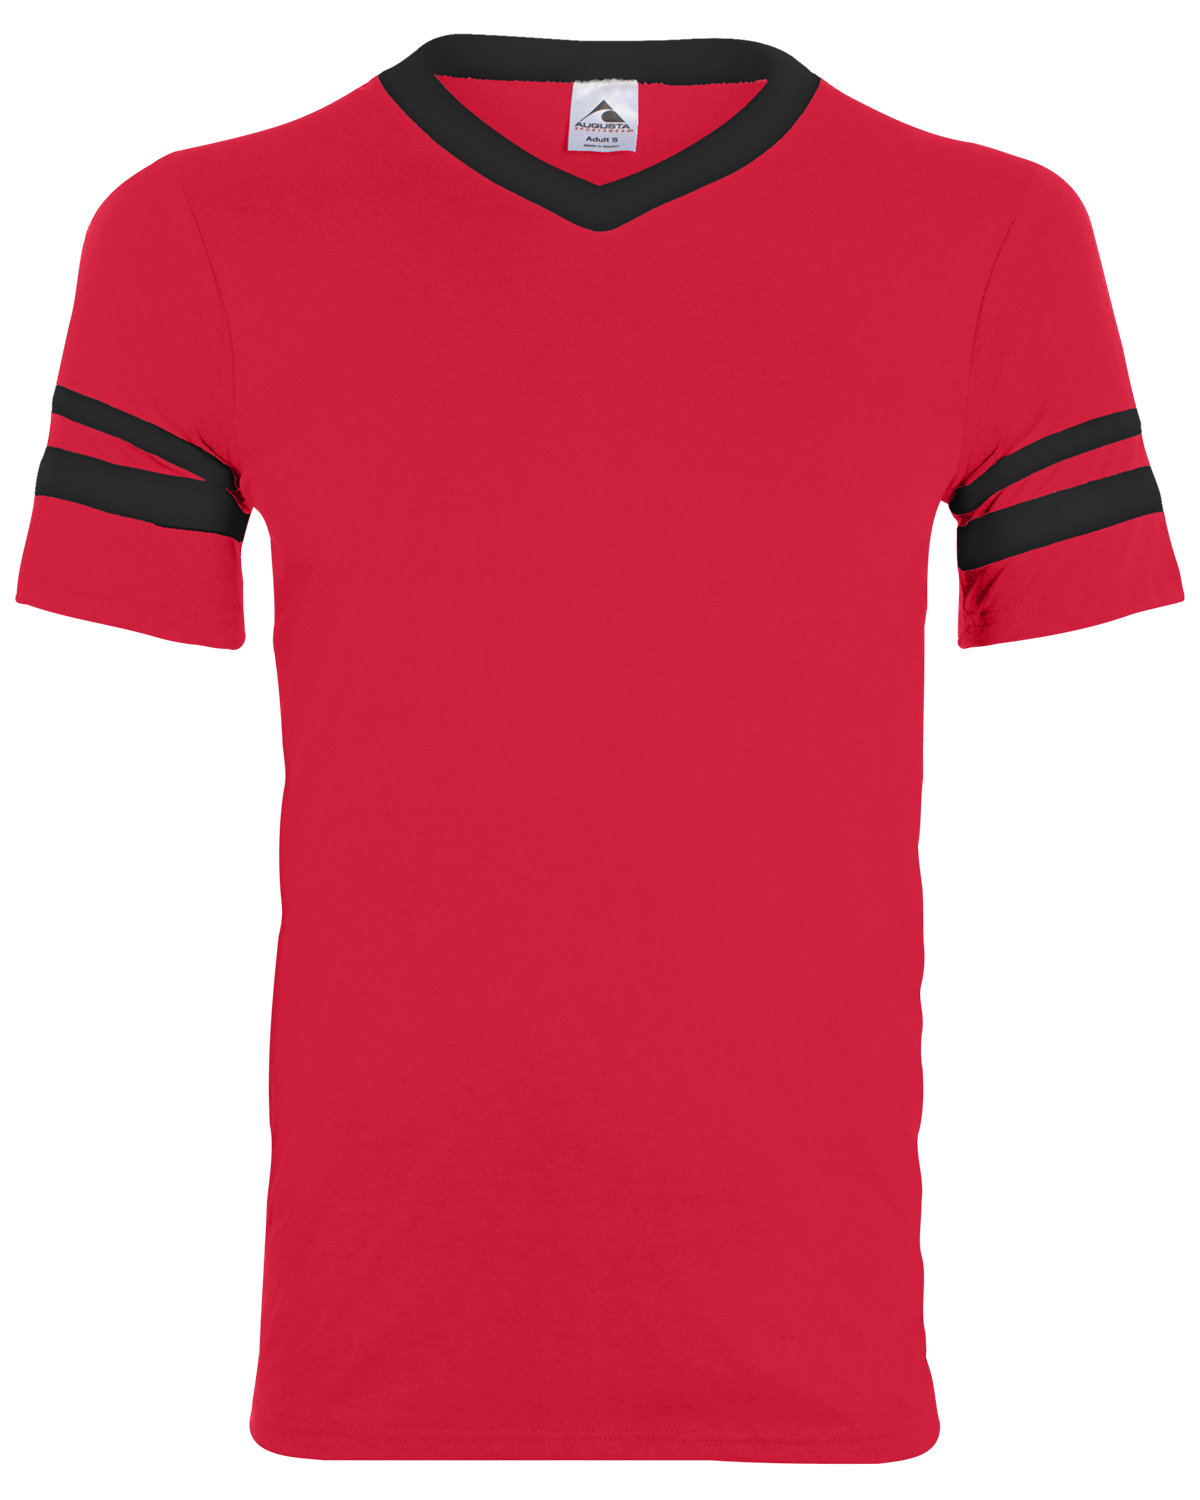 Augusta Sportswear Adult Sleeve Stripe Jersey RED/ BLACK 